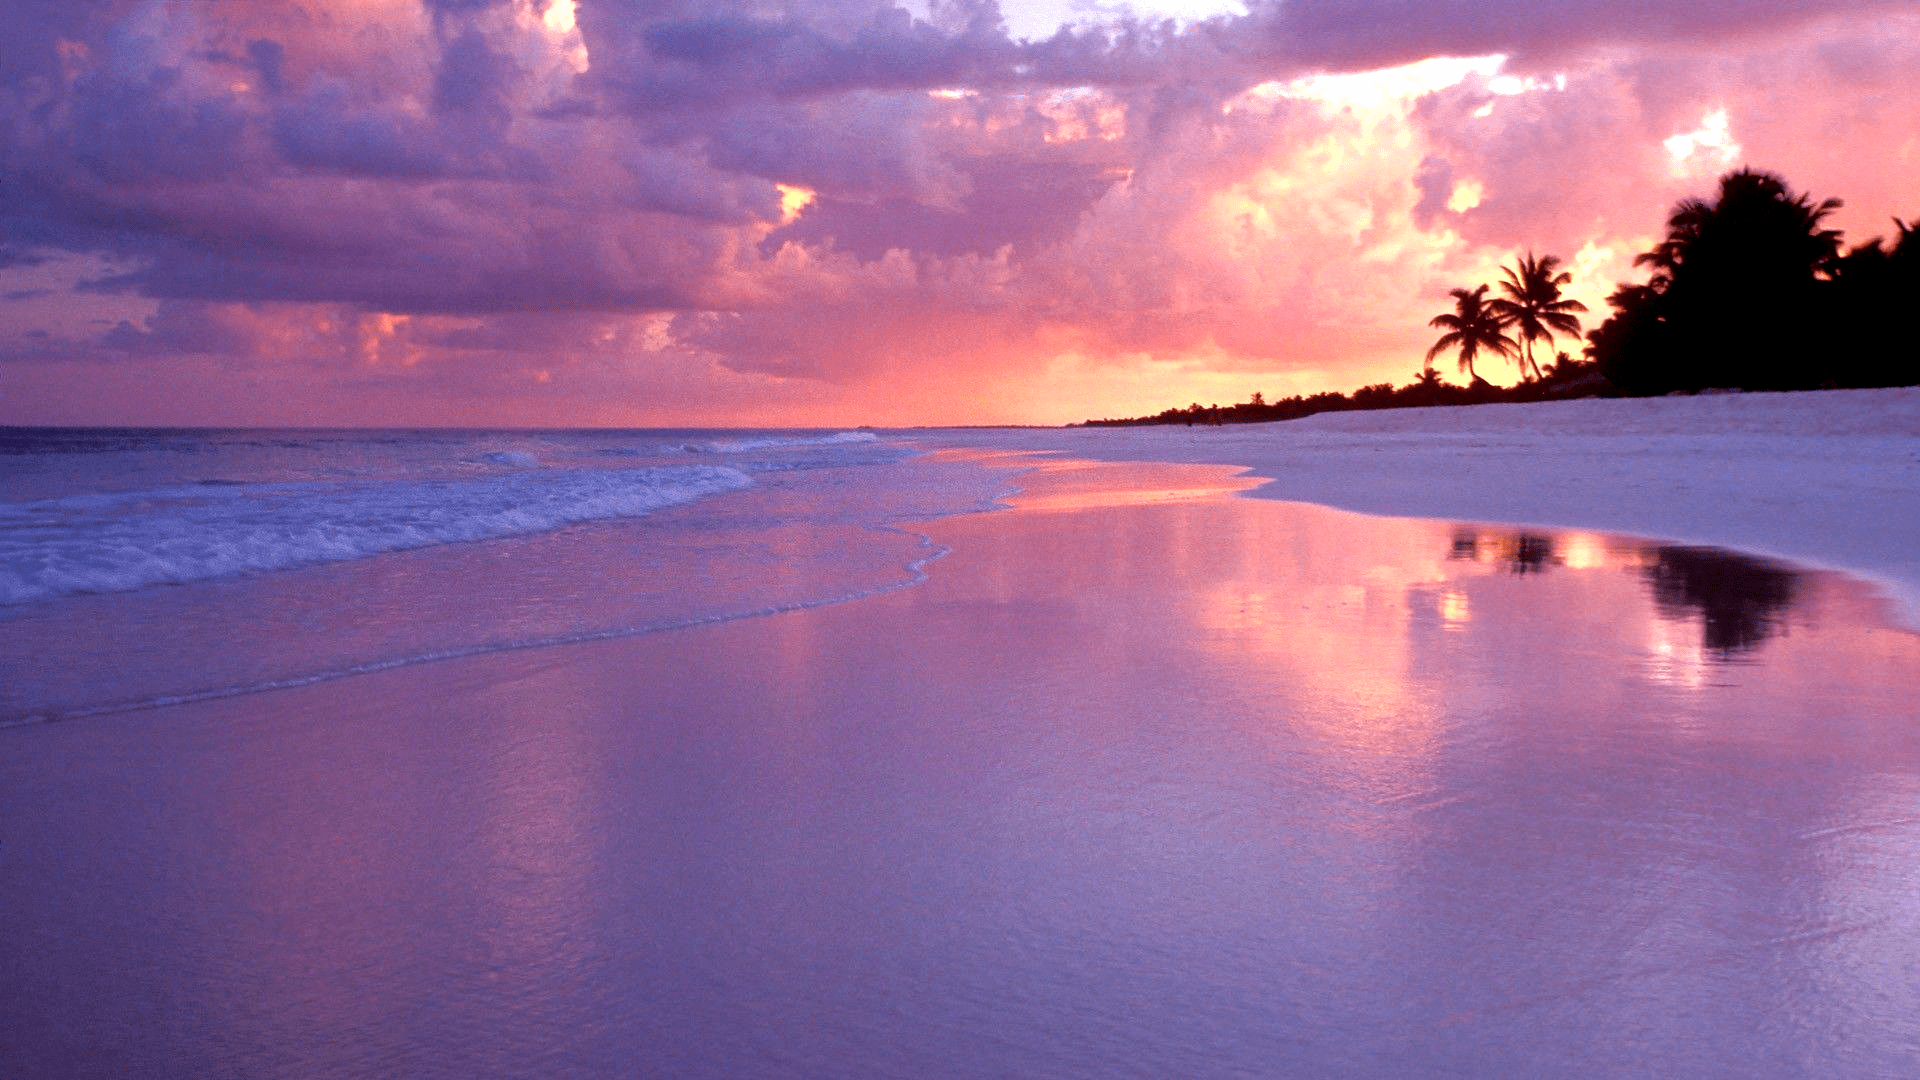 Pink Beach Sunset Desktop Wallpapers Top Free Pink Beach Sunset Desktop Backgrounds Wallpaperaccess